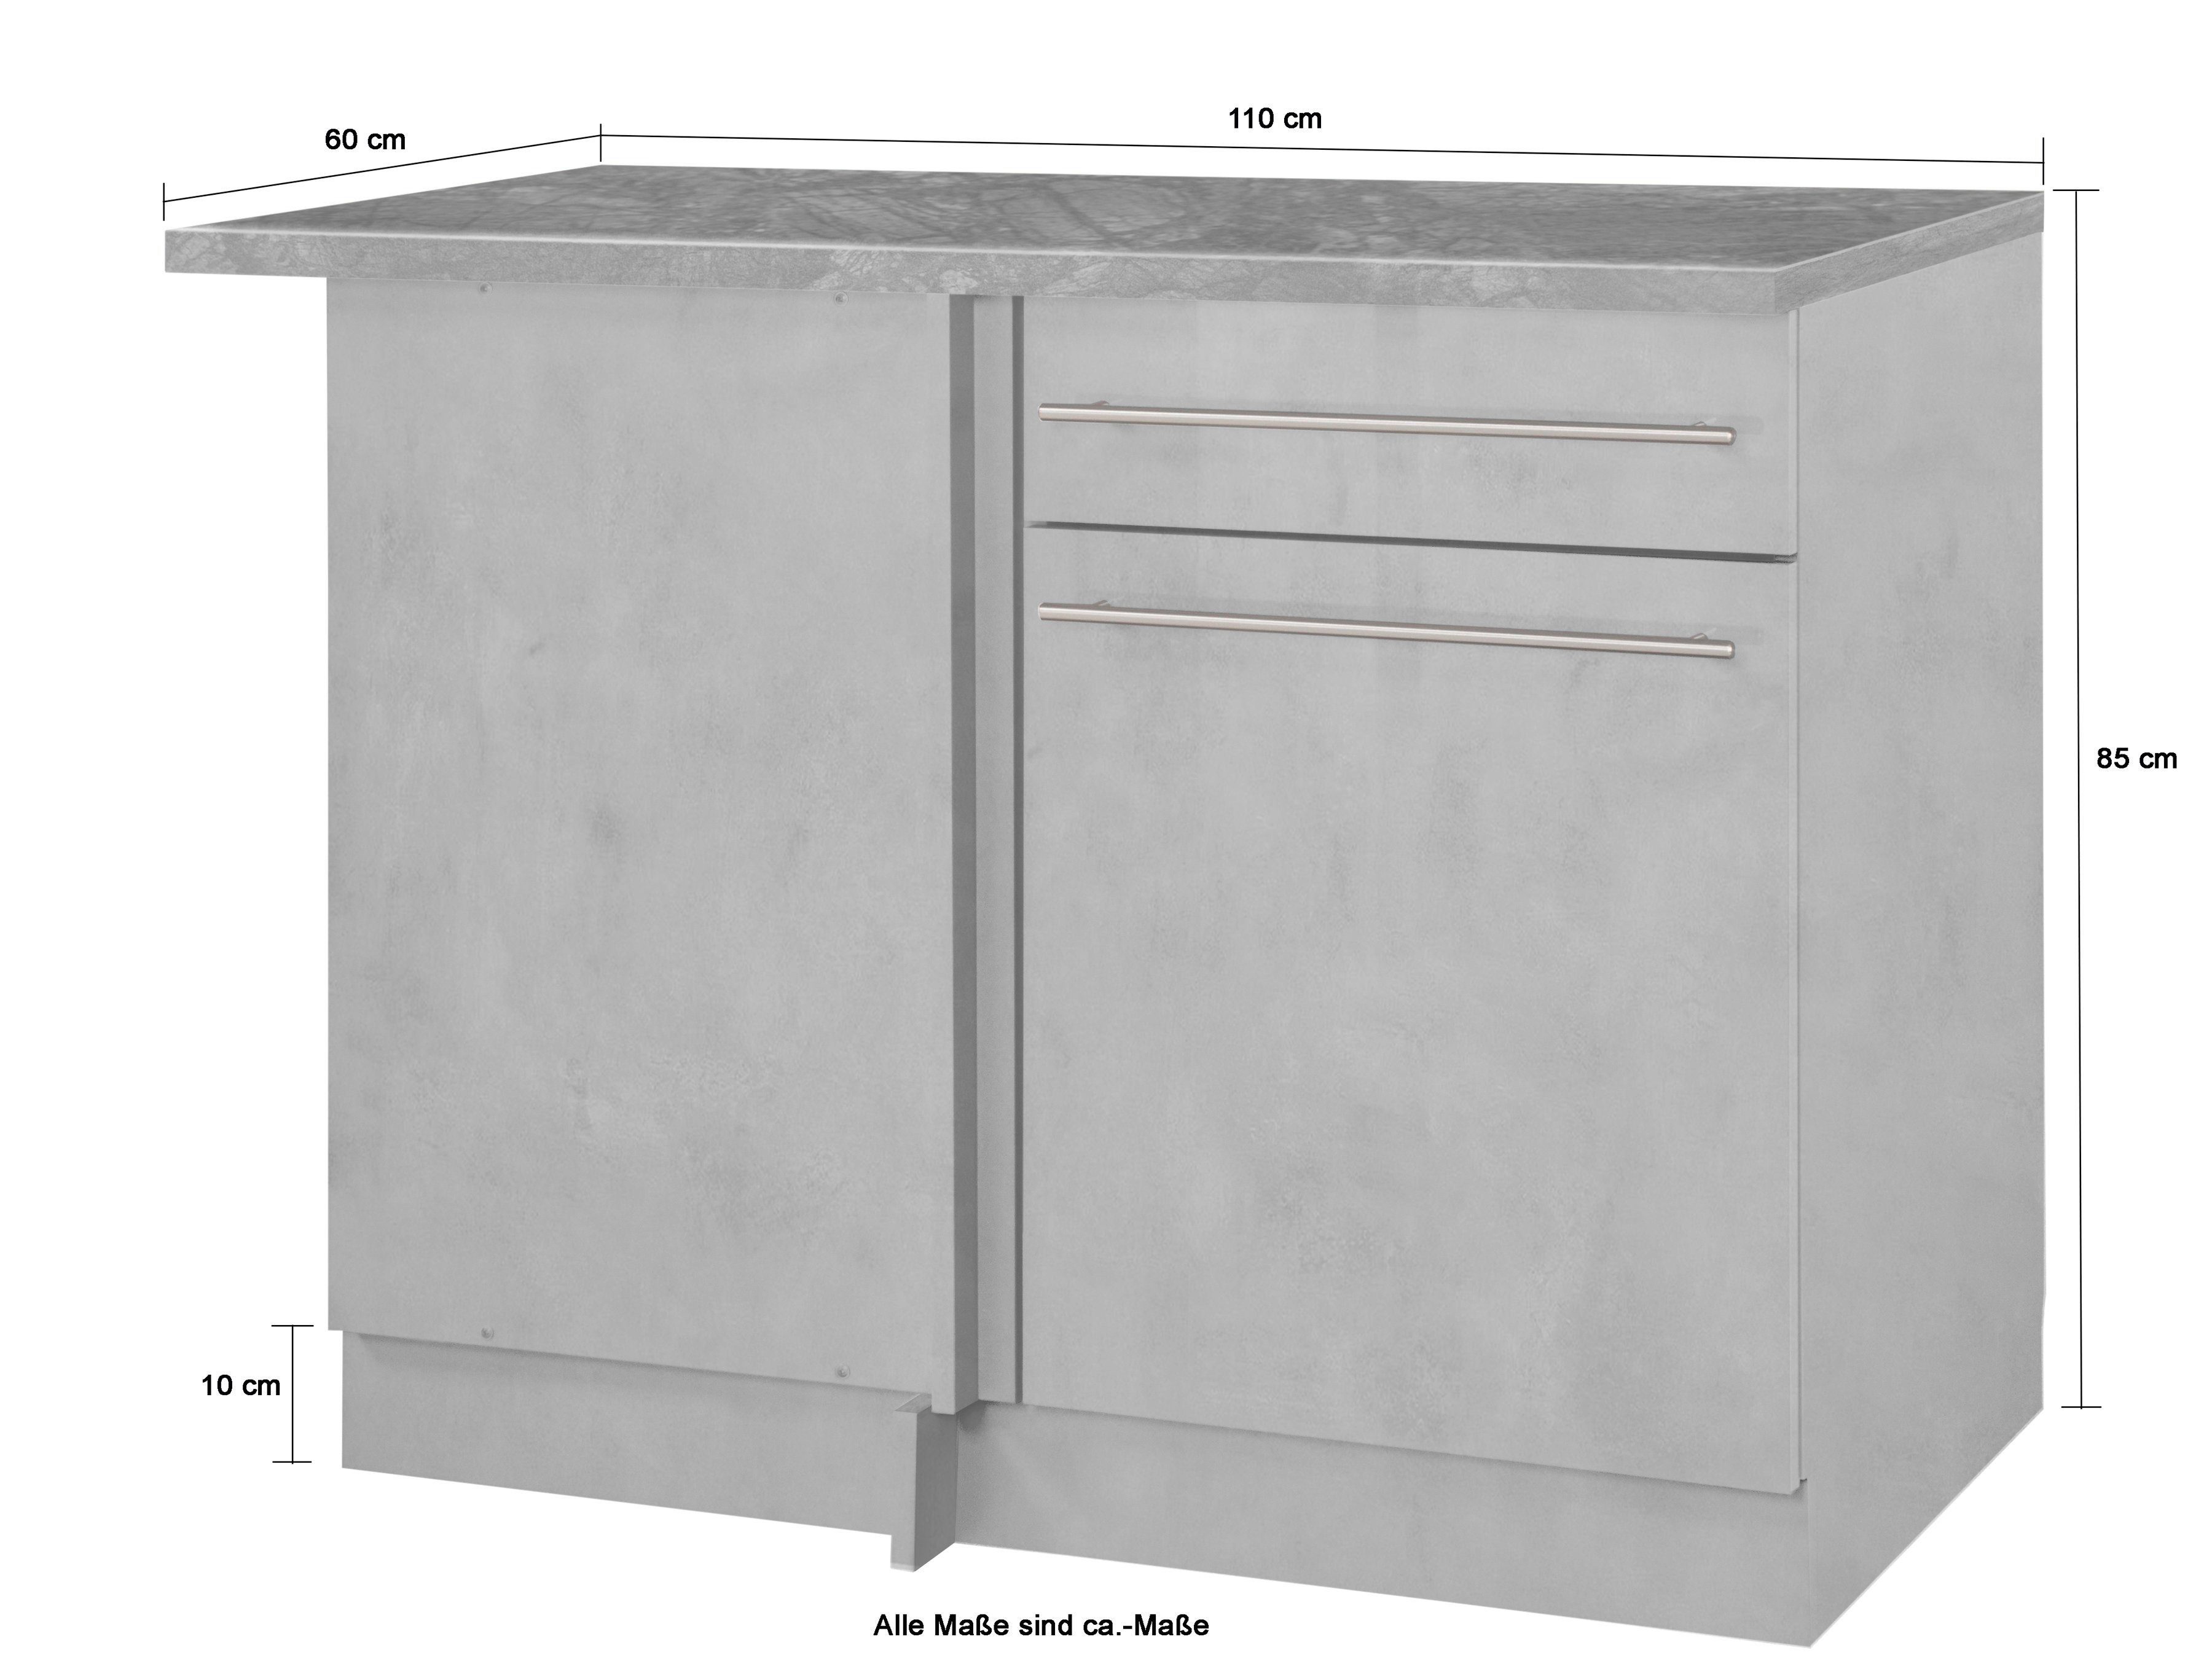 110 cm wiho Betonfarben breit, | Eckunterschrank Raumnutzung Betonfarben eine Küchen optimale für Chicago